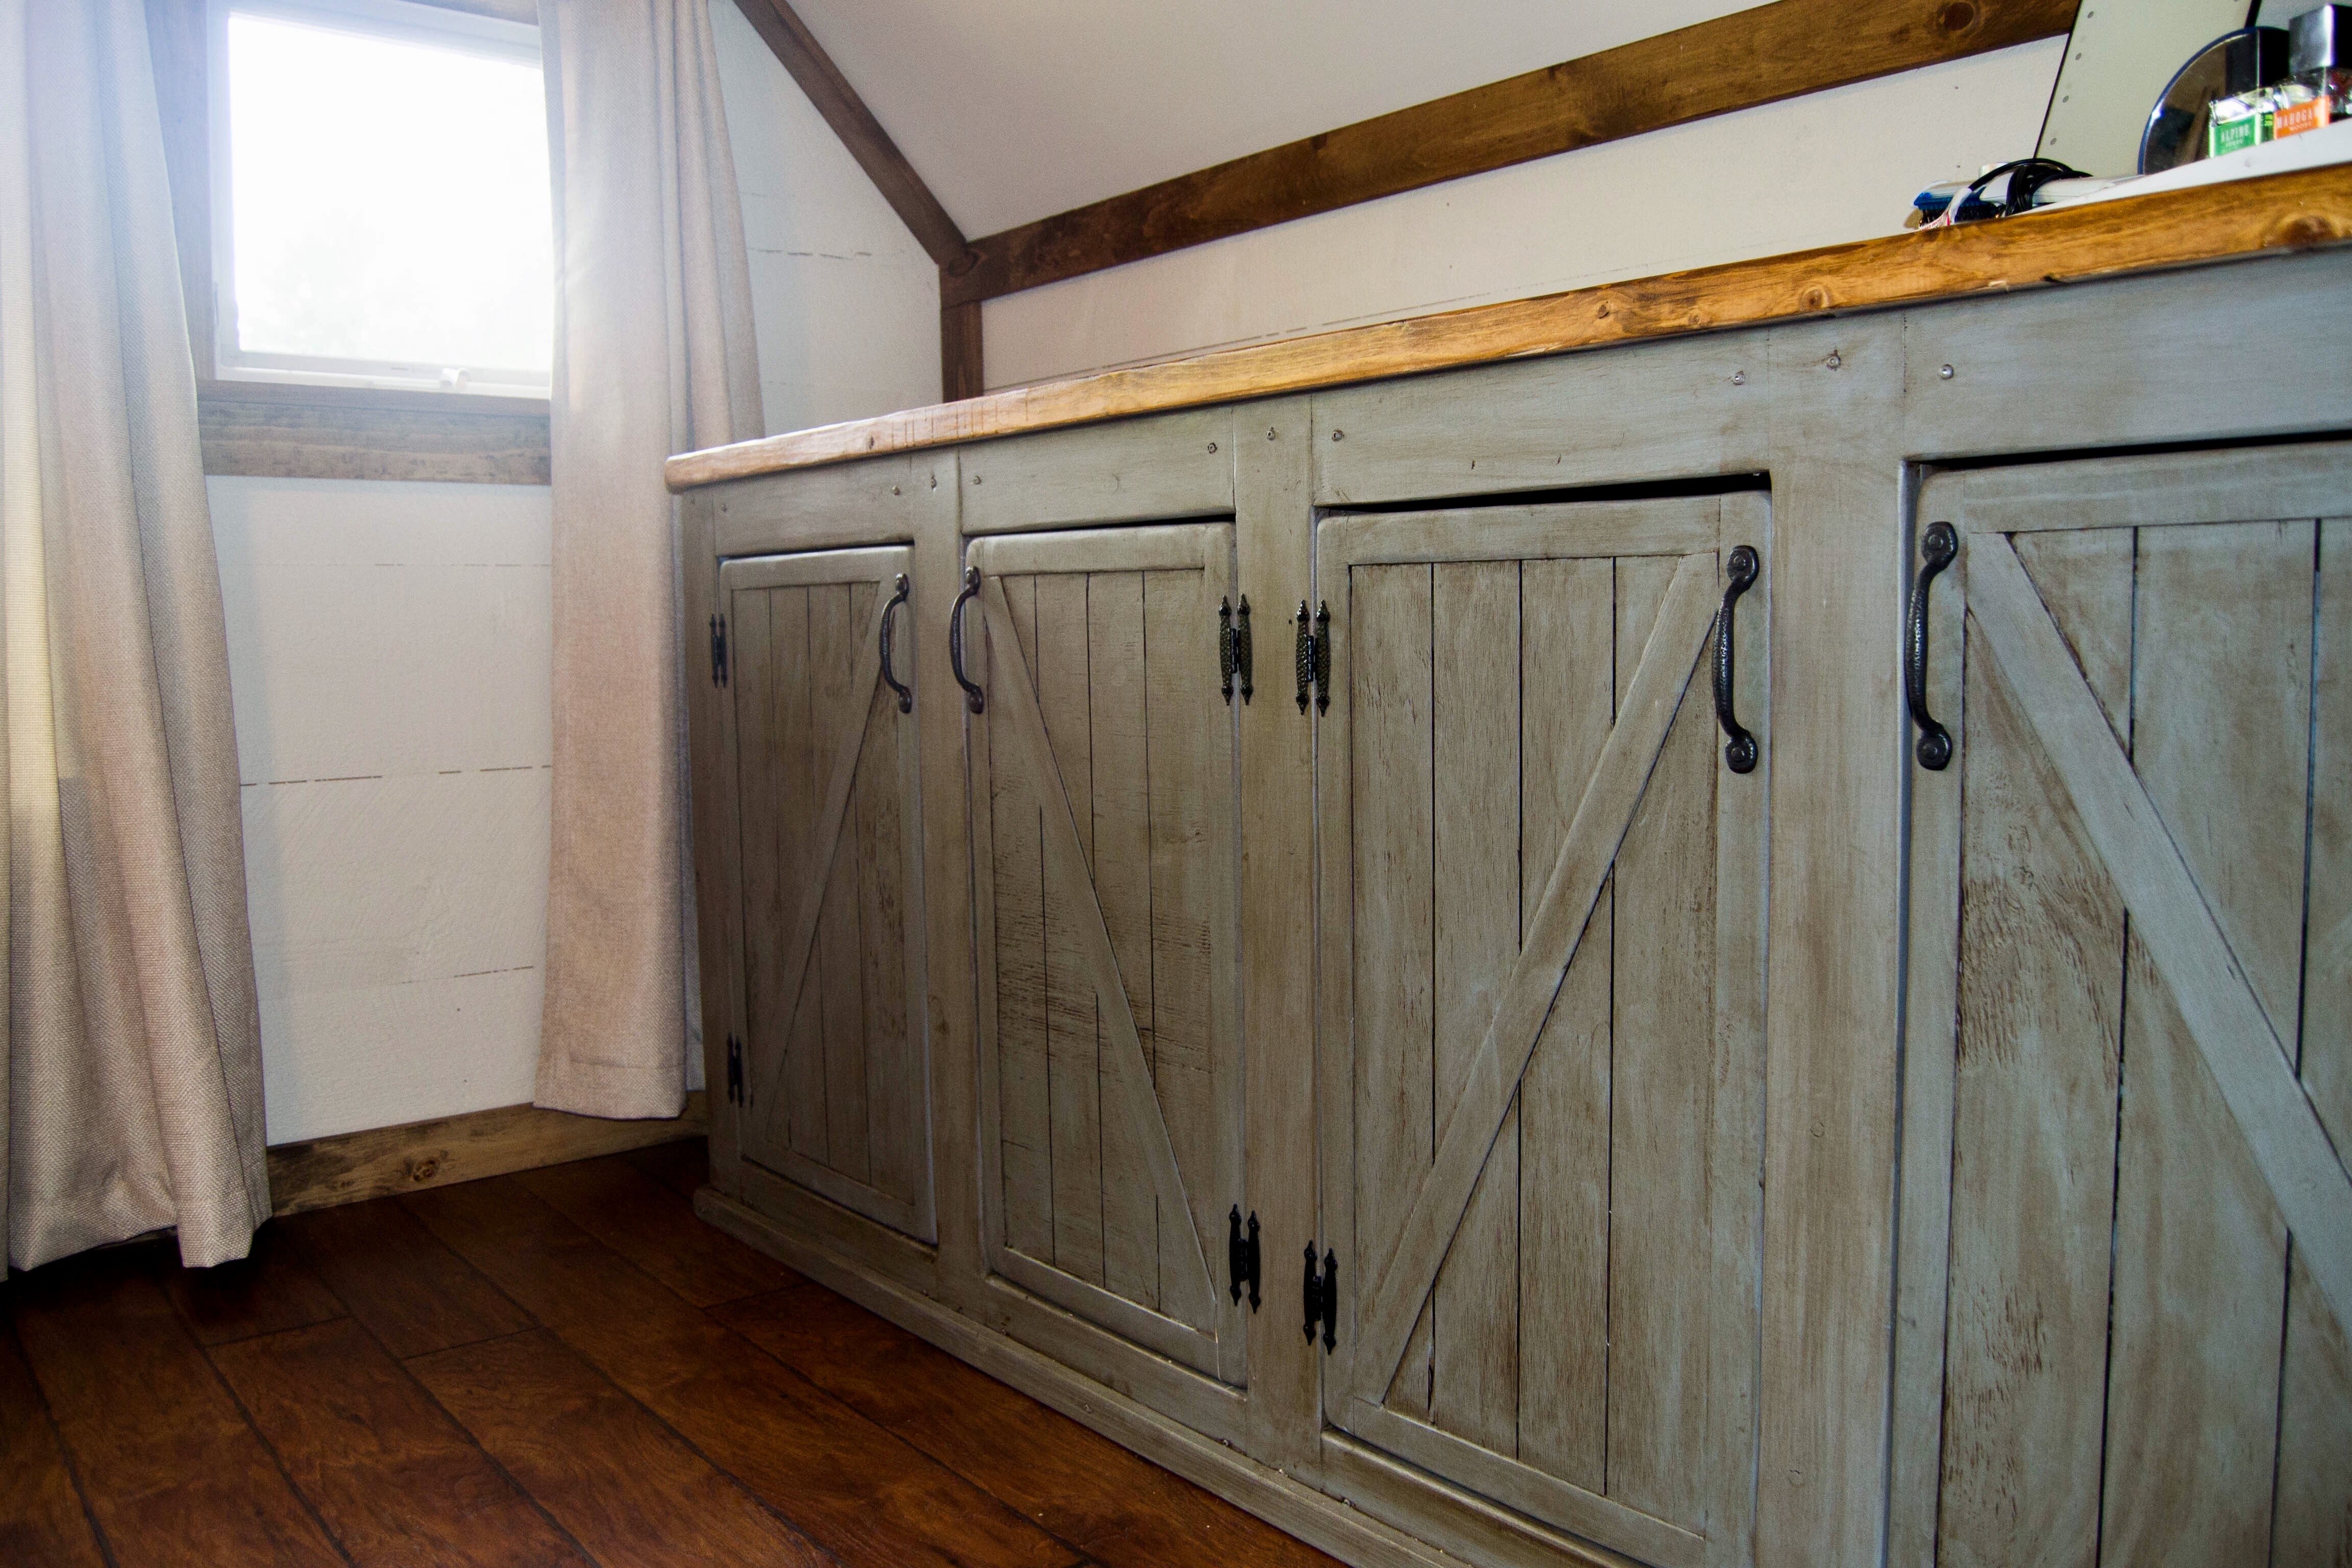 Scrapped The Sliding Barn Doors Rustic Cabinet Doors Instead